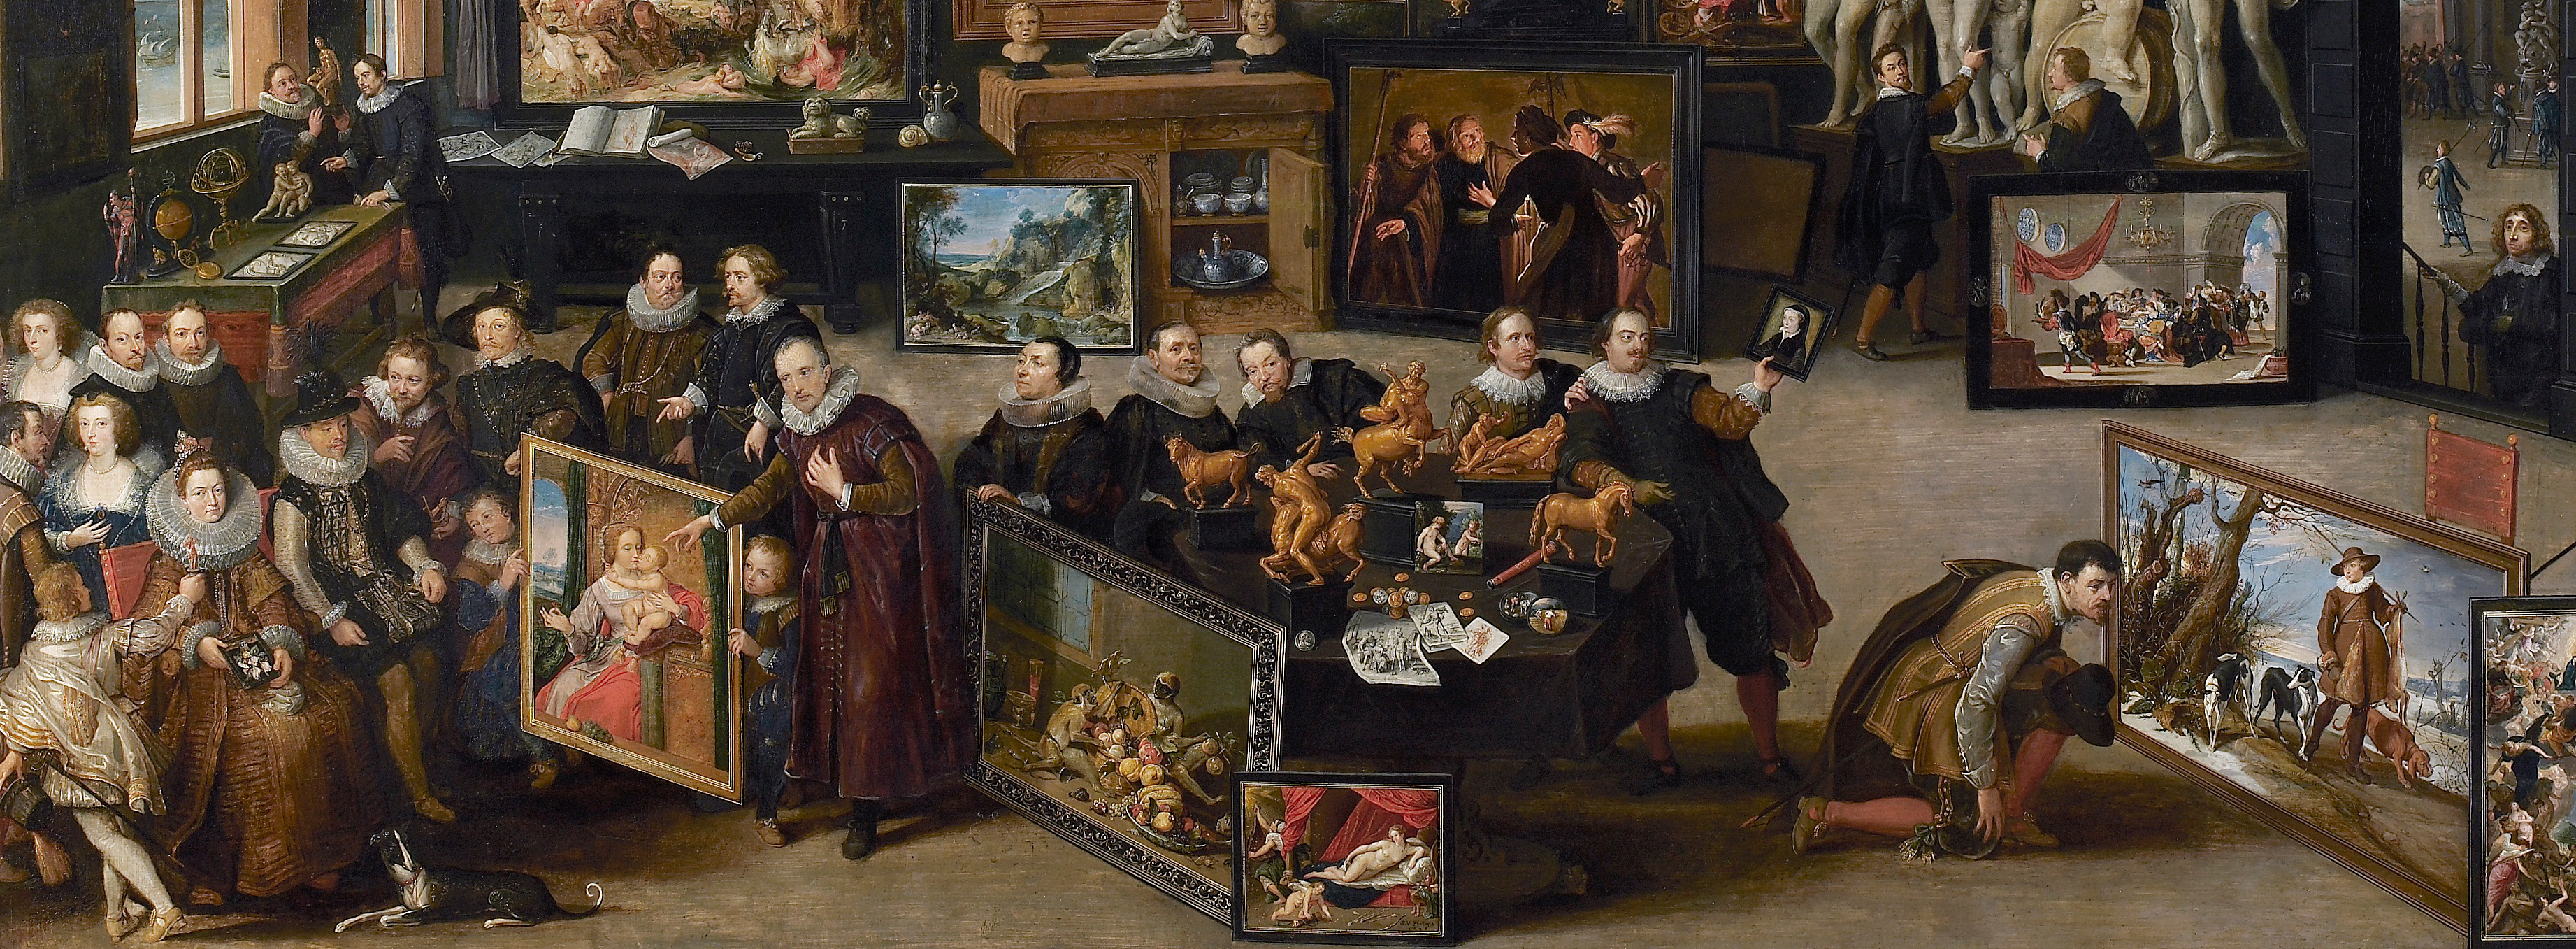 Willem van Haecht I, The gallery of Cornelis van der Geest (detail), The Rubens House.